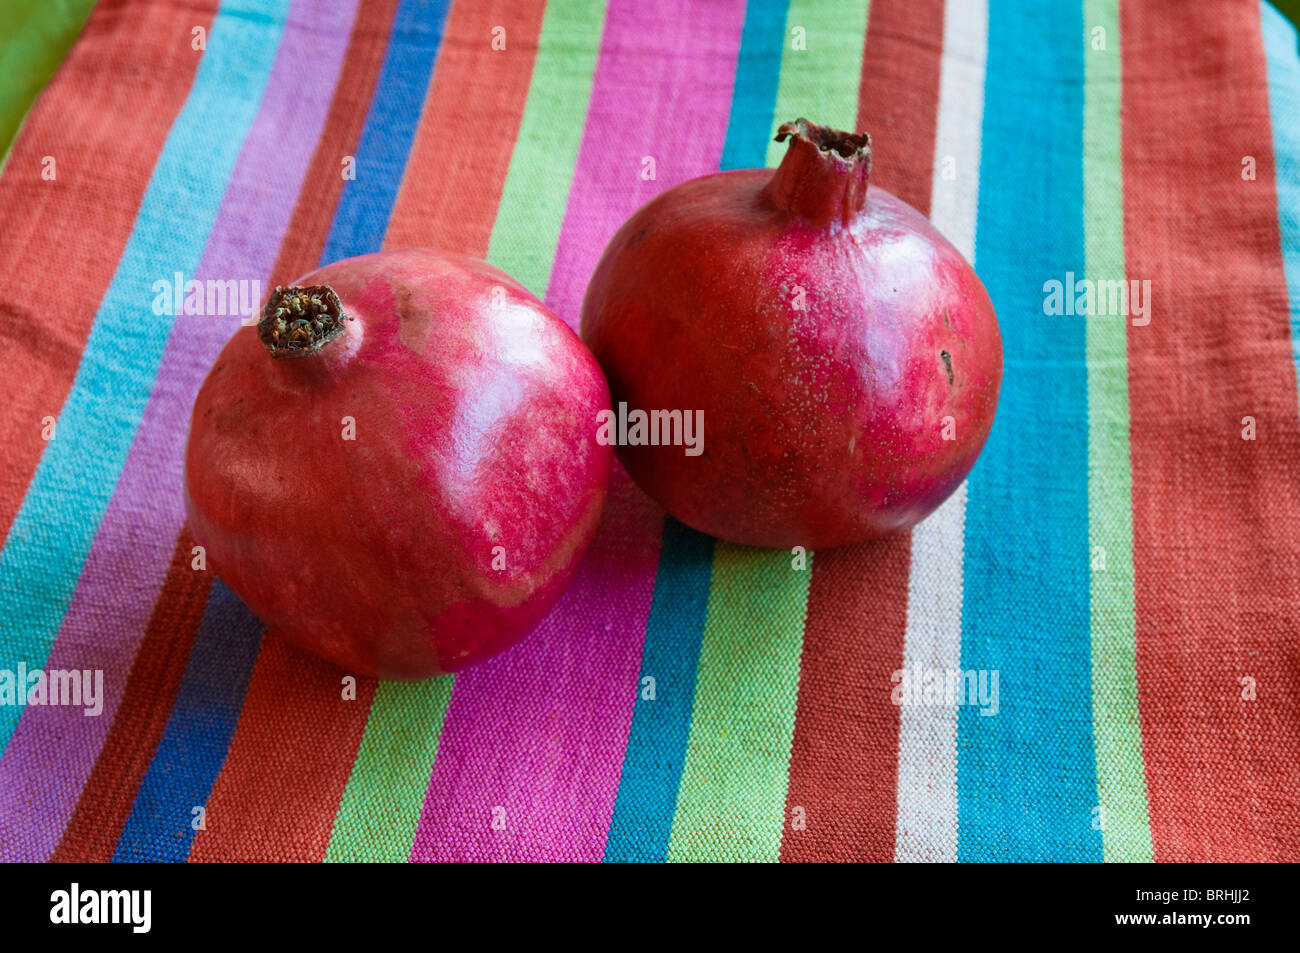 Granatapfel Früchte mit einem bunt gestreiften Baumwolle Tuch Hintergrund. Stockfoto